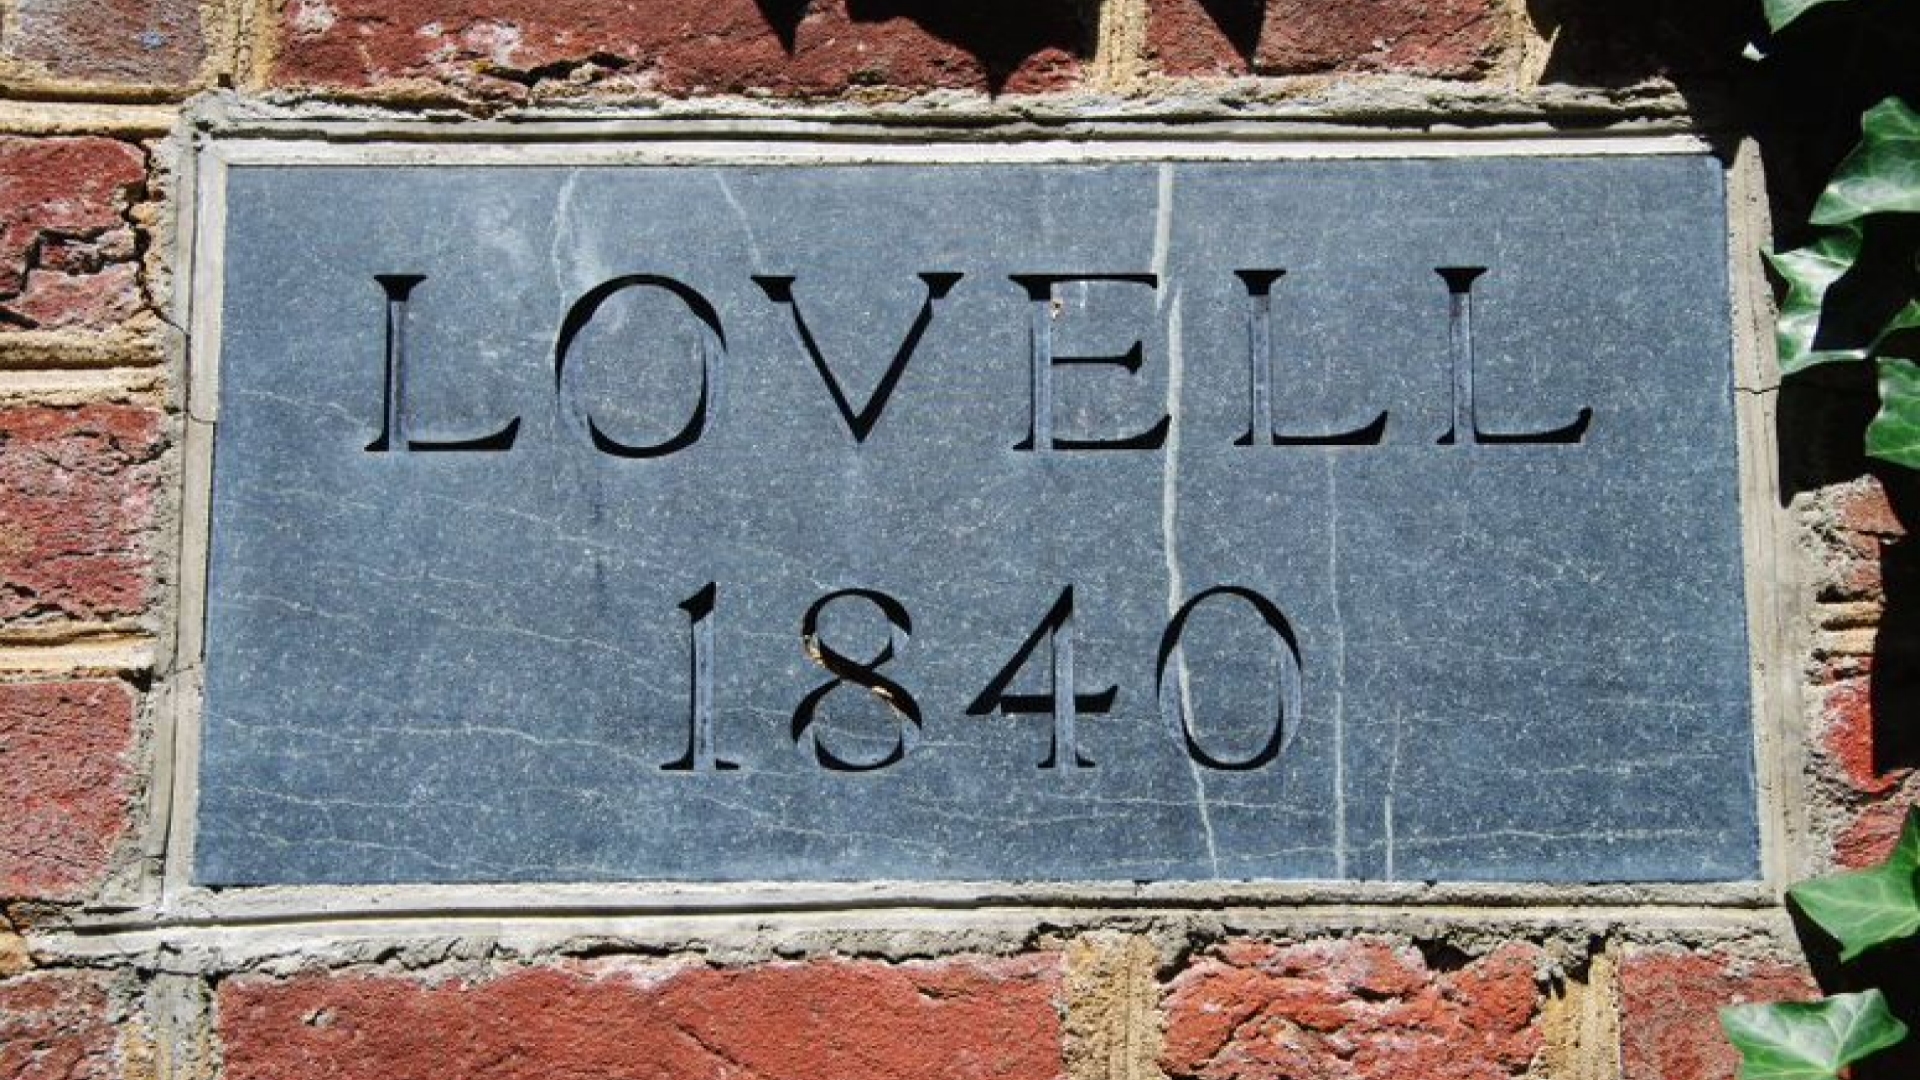 Lovell 1840